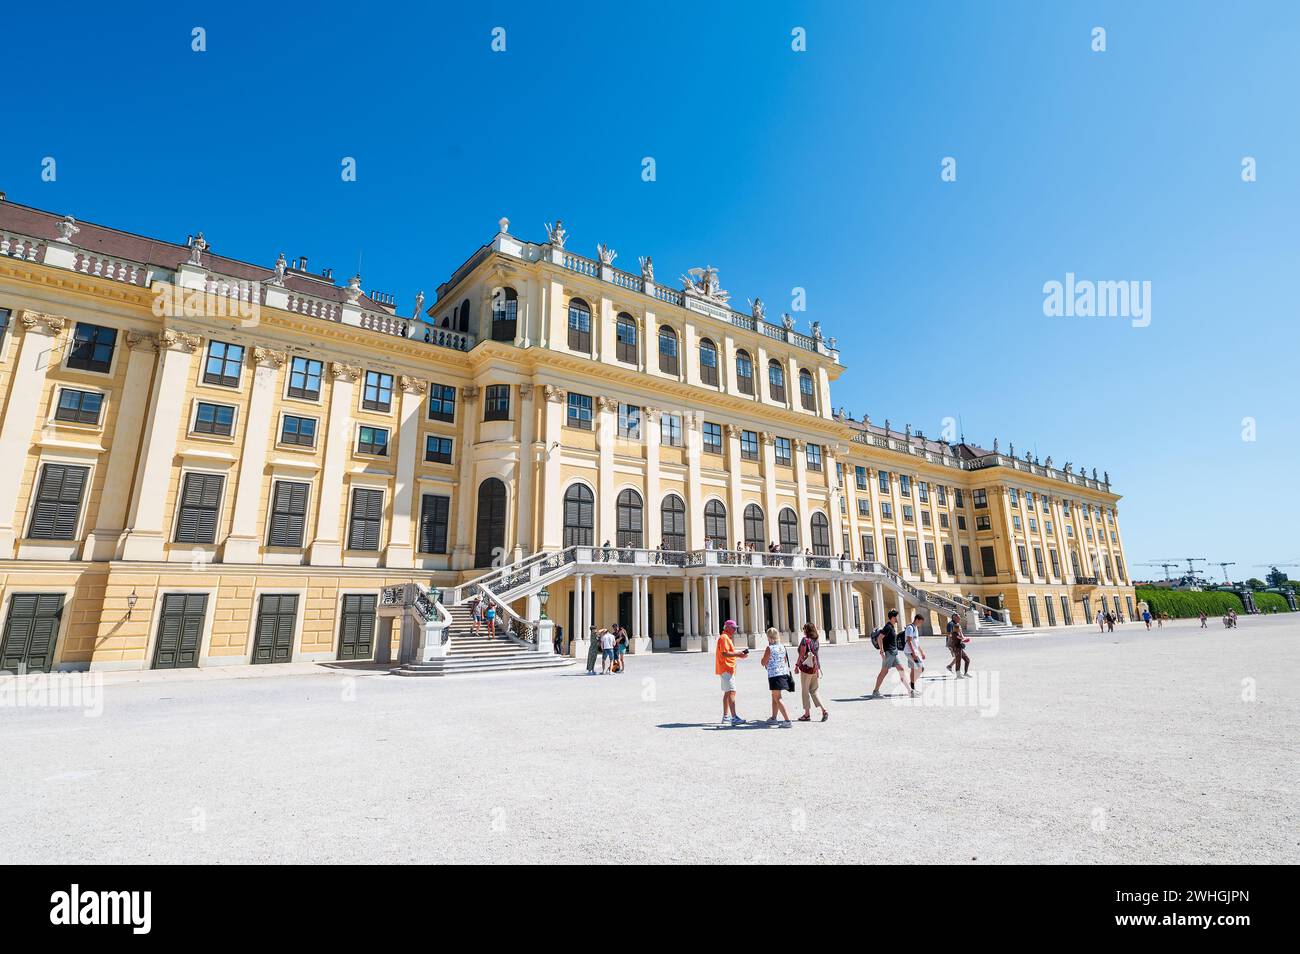 Wien, Österreich - 12. August 2022: Das Wiener Schloss schönbrunn erhebt sich über einem belebten Stadtplatz, während sich die Menschen unter dem Sommerhimmel versammeln und die Gr. Bestaunen Stockfoto